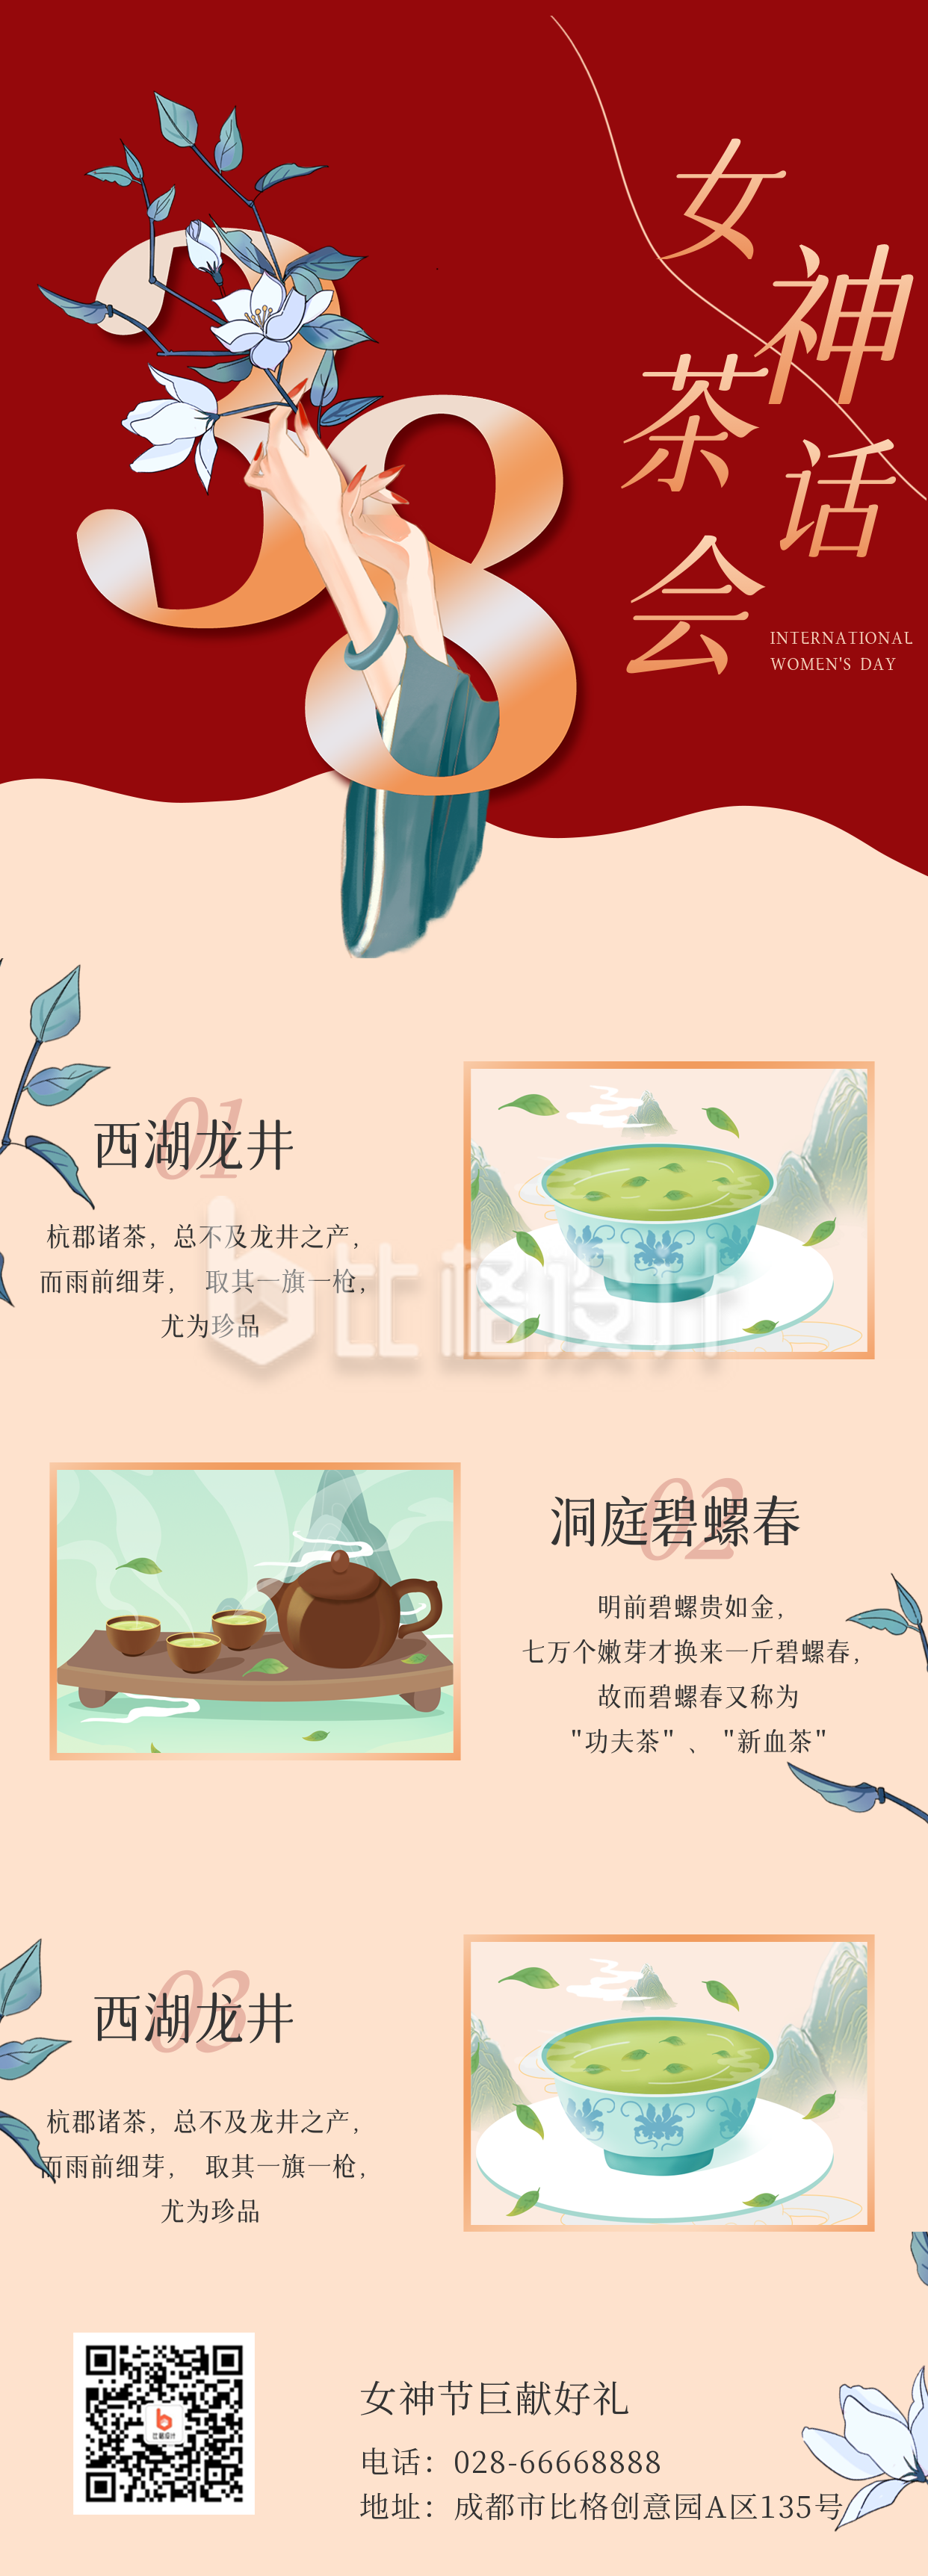 妇女节茶文化营销促销宣传手机海报